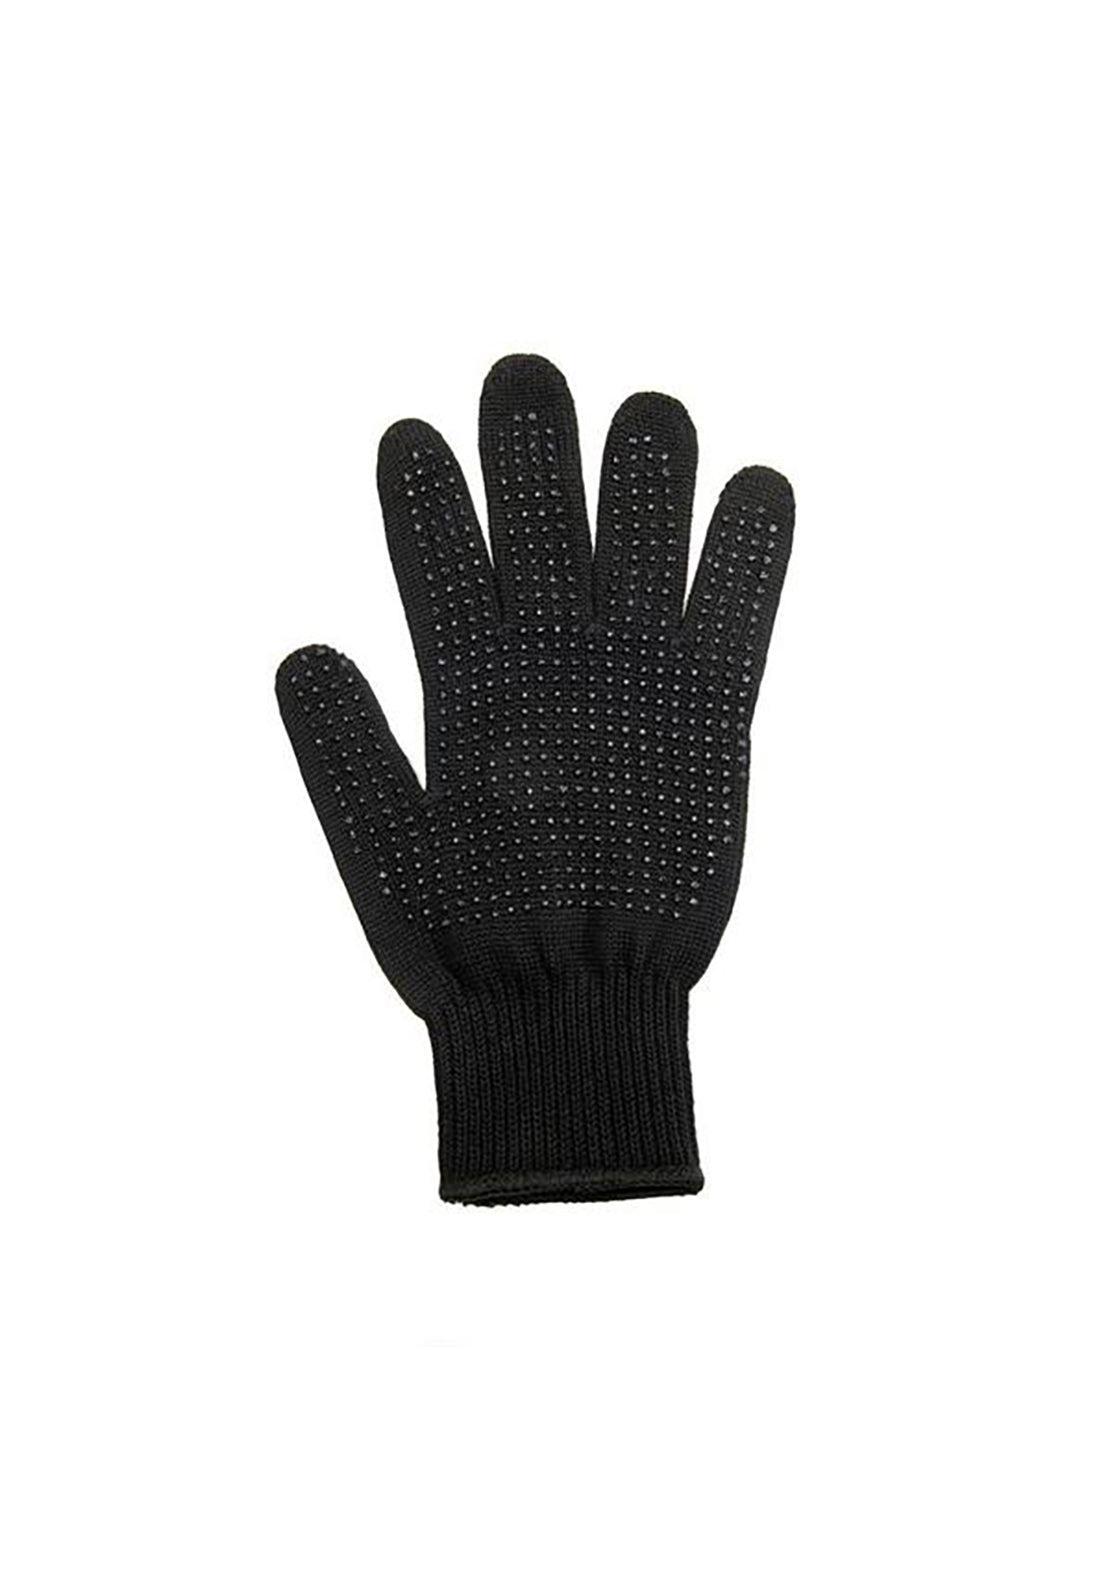 Voduz Heat Protective Glove 1 Shaws Department Stores